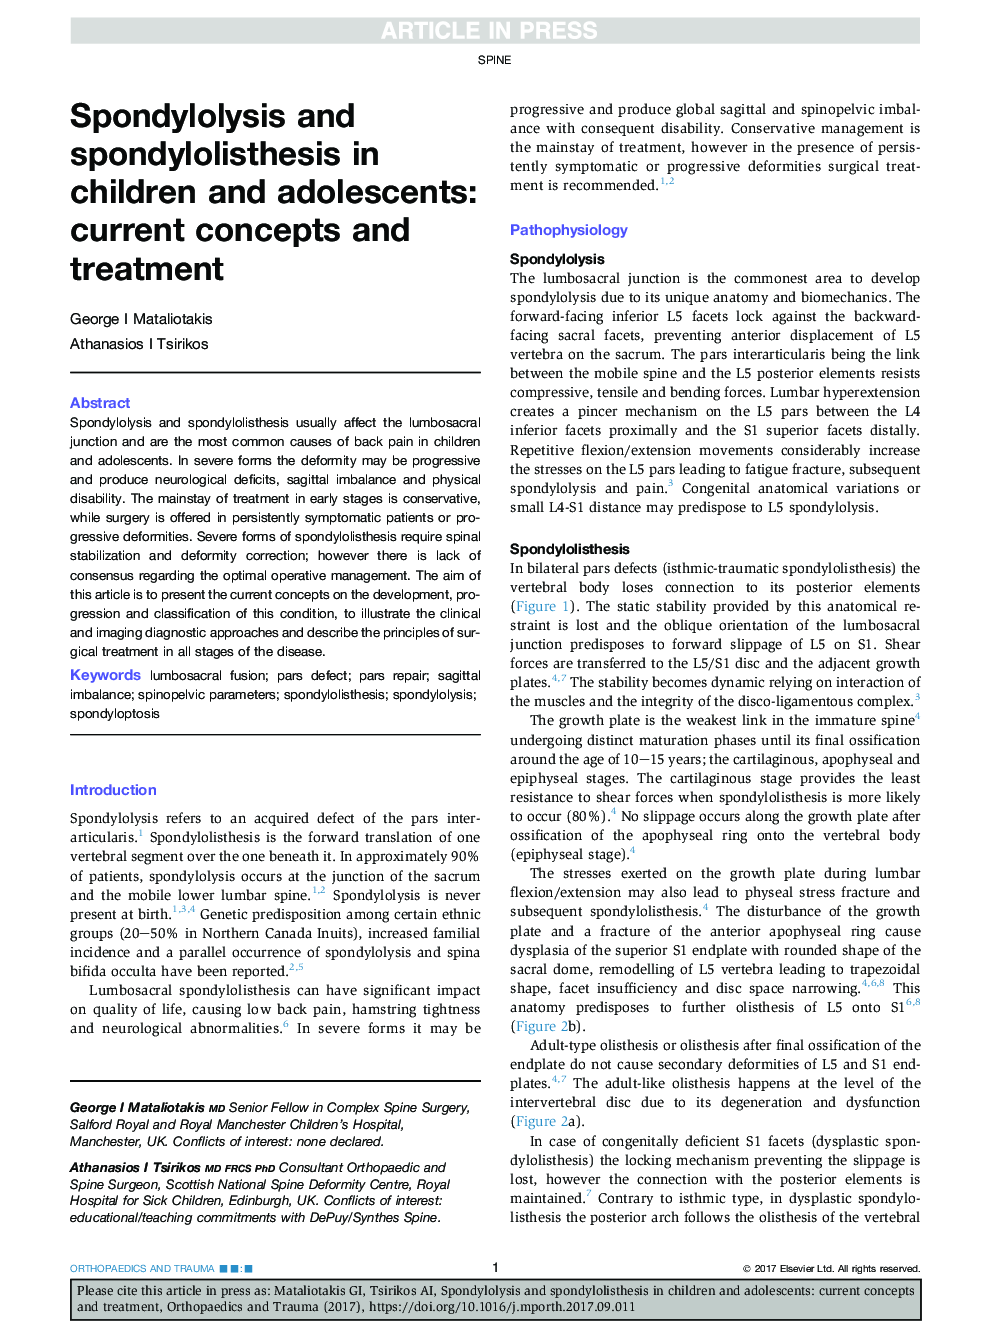 اسپوندیلولیز و اسپوندیلولیستیس در کودکان و نوجوانان: مفاهیم و درمان جاری 